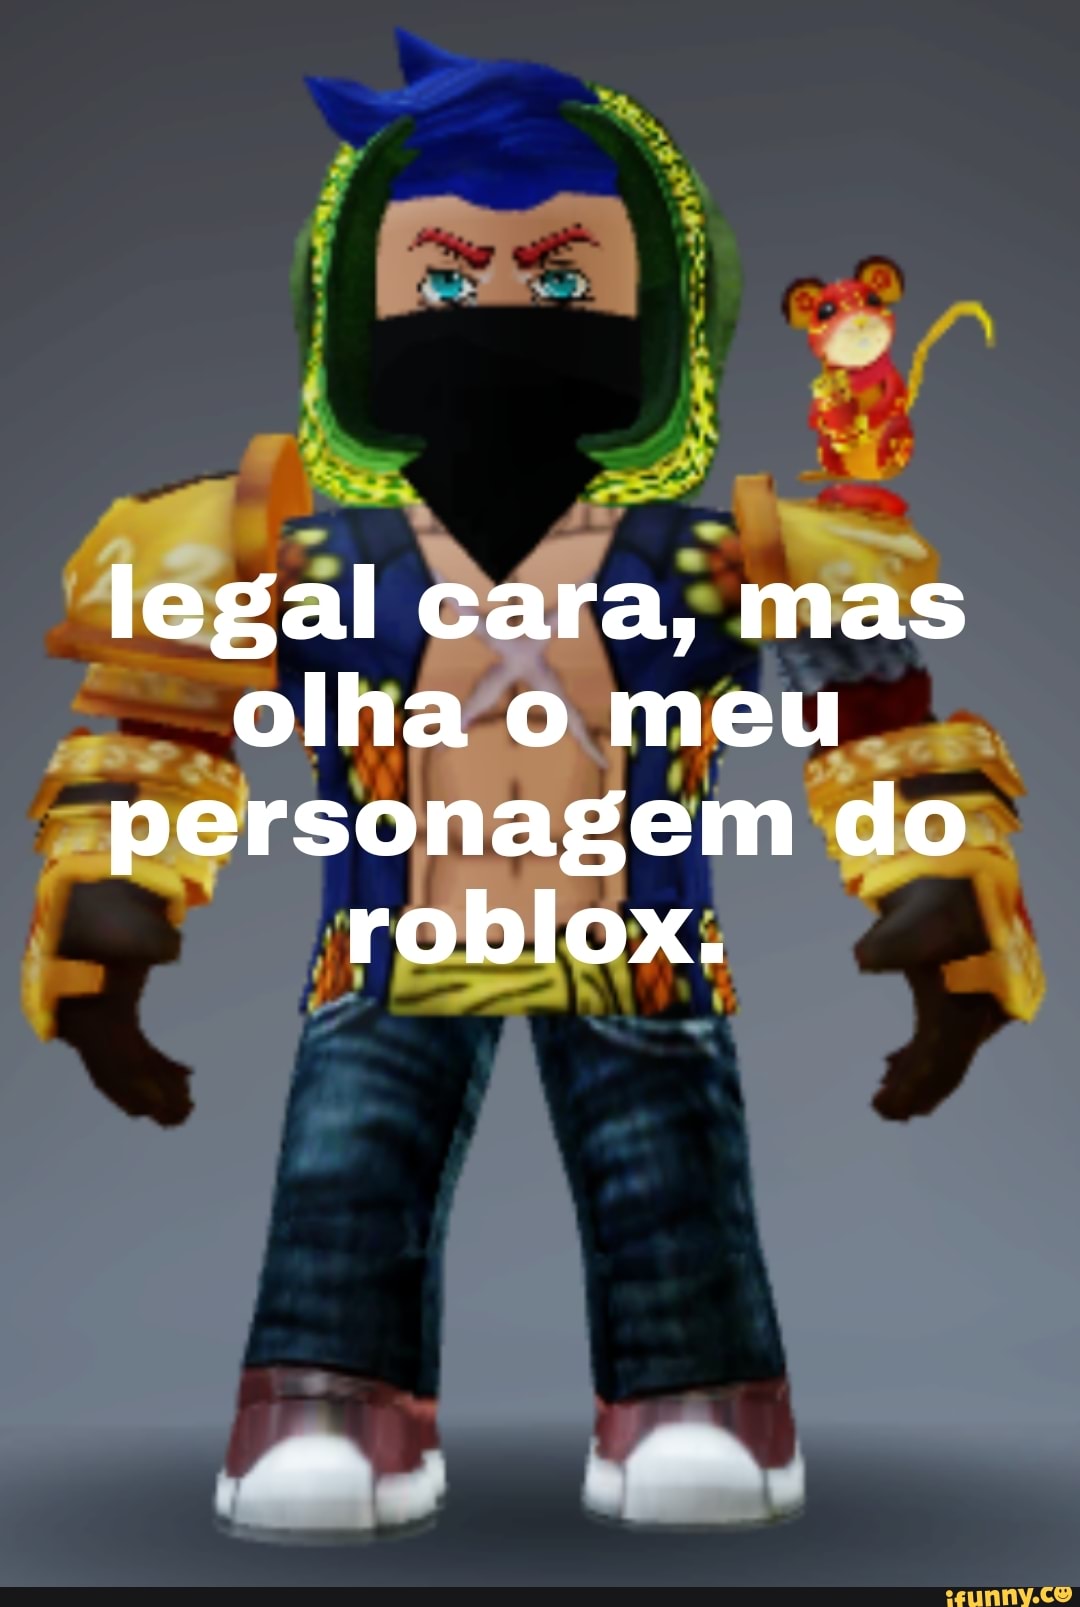 Legal cara, mas olha o meu personagem do roblox. - iFunny Brazil